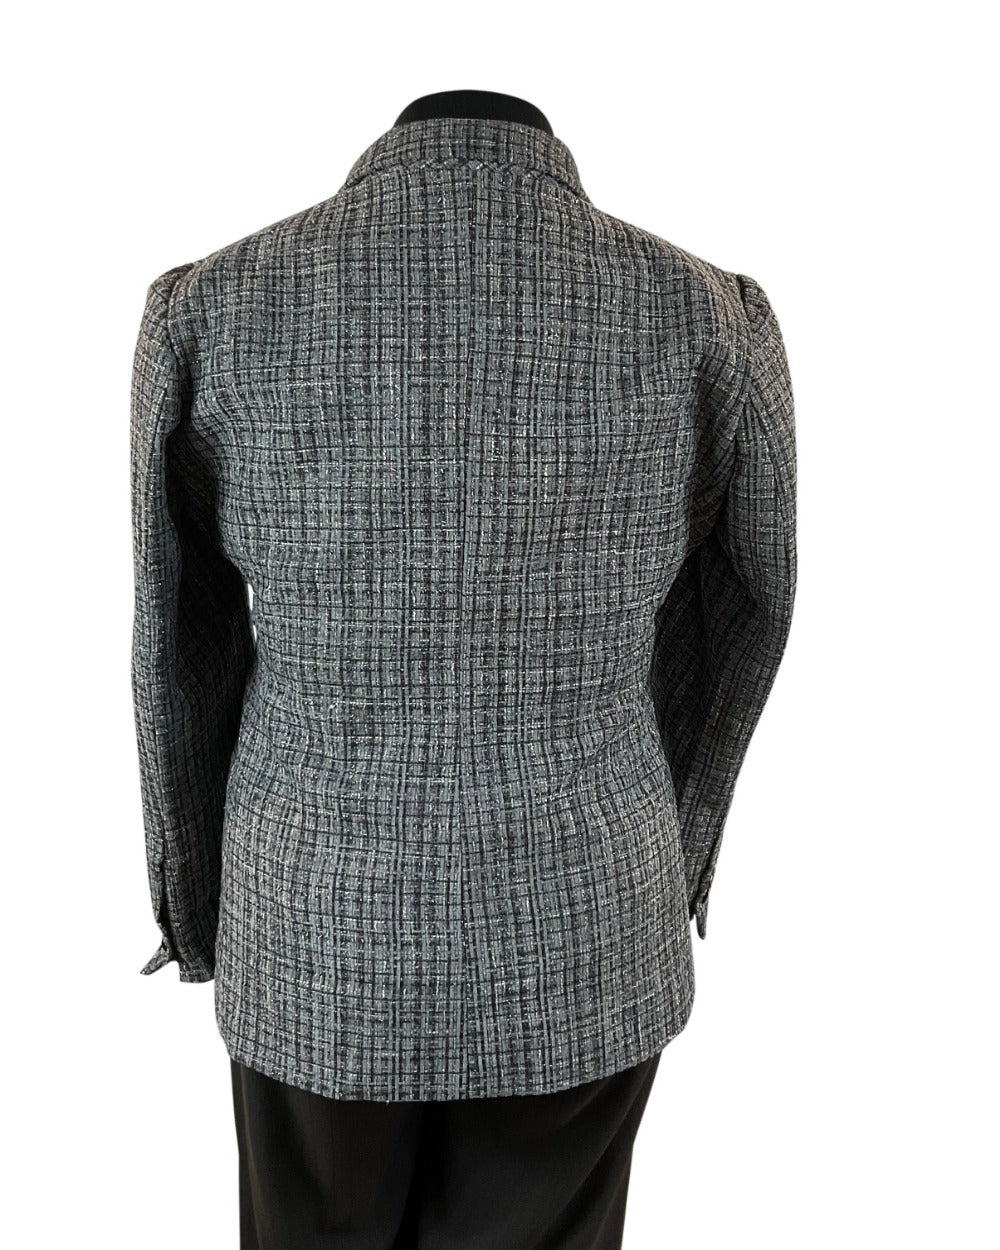 Good quality women's Tweed wool blazer, Grey, tweed wool with glitters, glittering blazer,Perth, Au